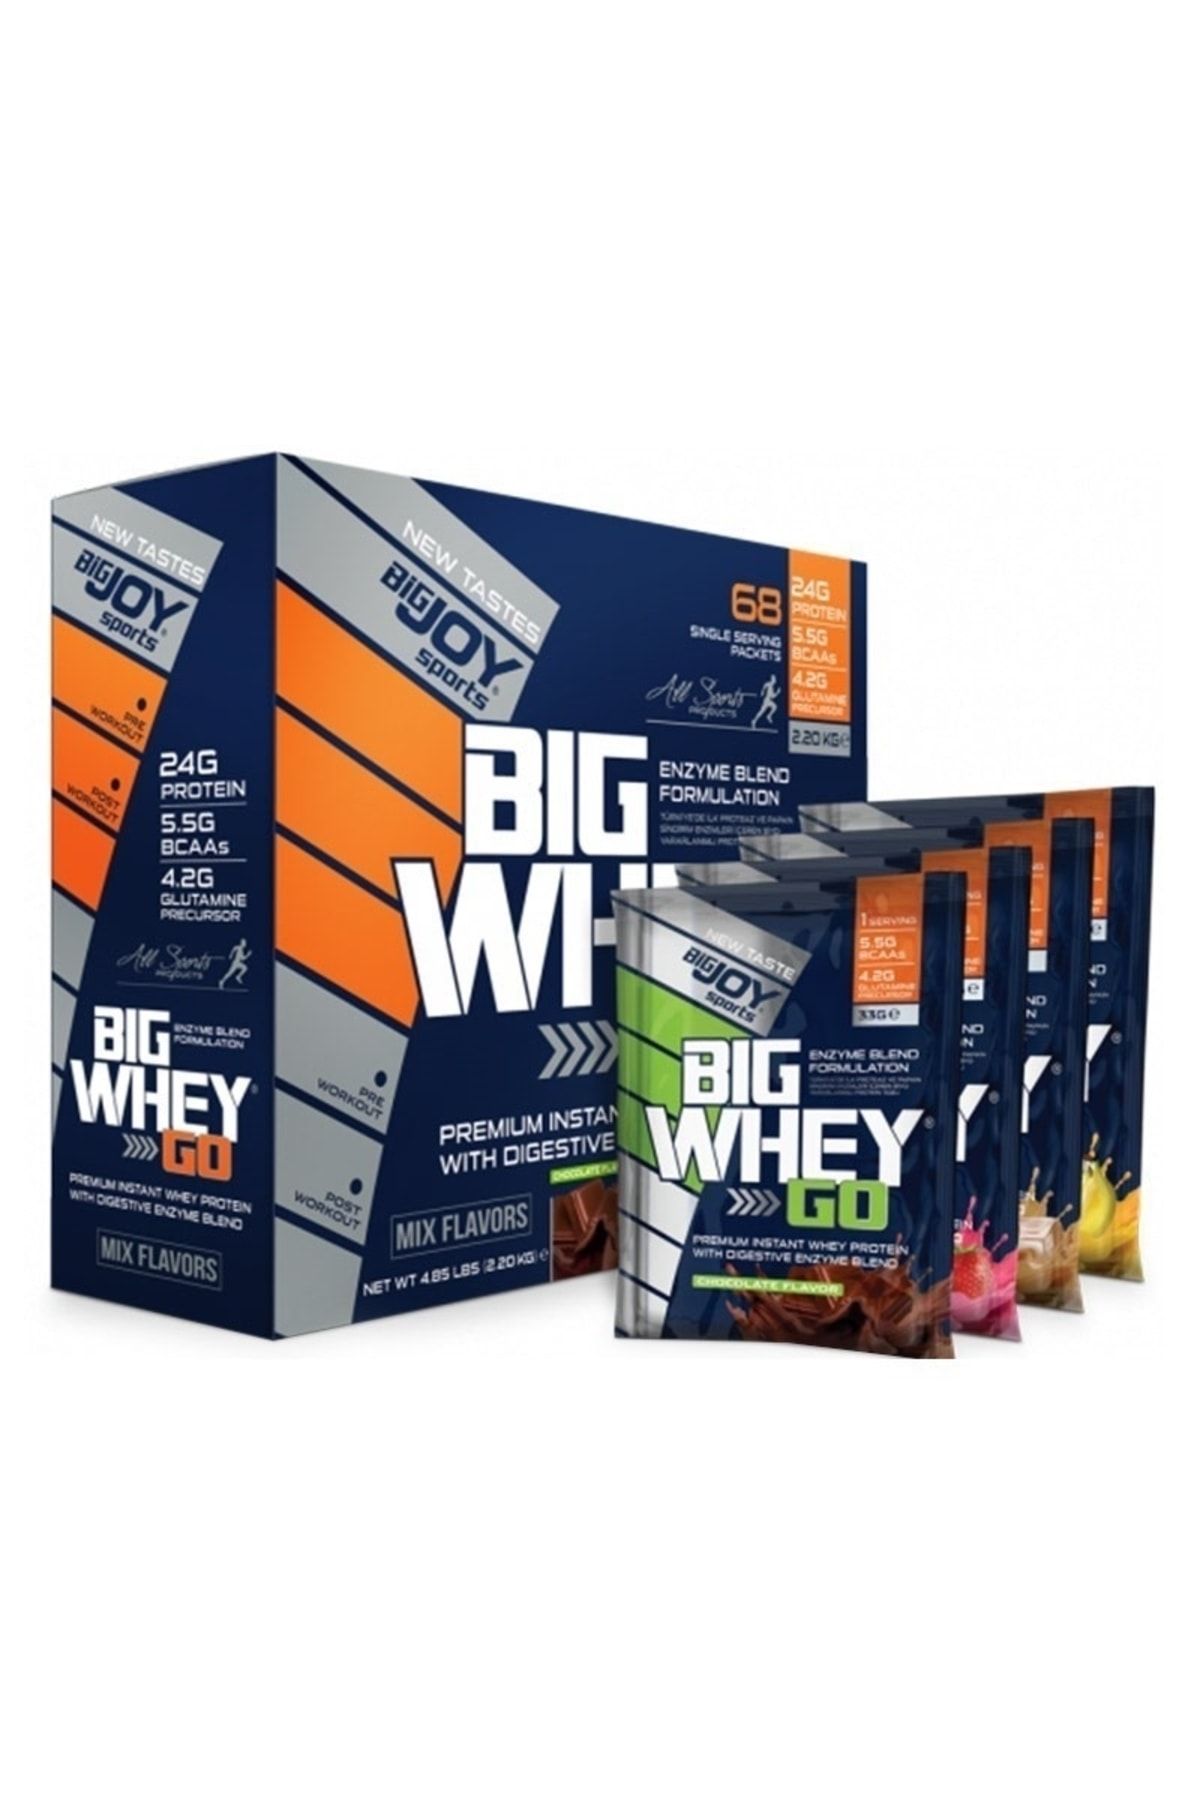 Bigjoy Sports Bigjoy Bigwhey Go Whey Protein 68 Şase 2200 gr Mix Flavors 4 Farklı Aroma